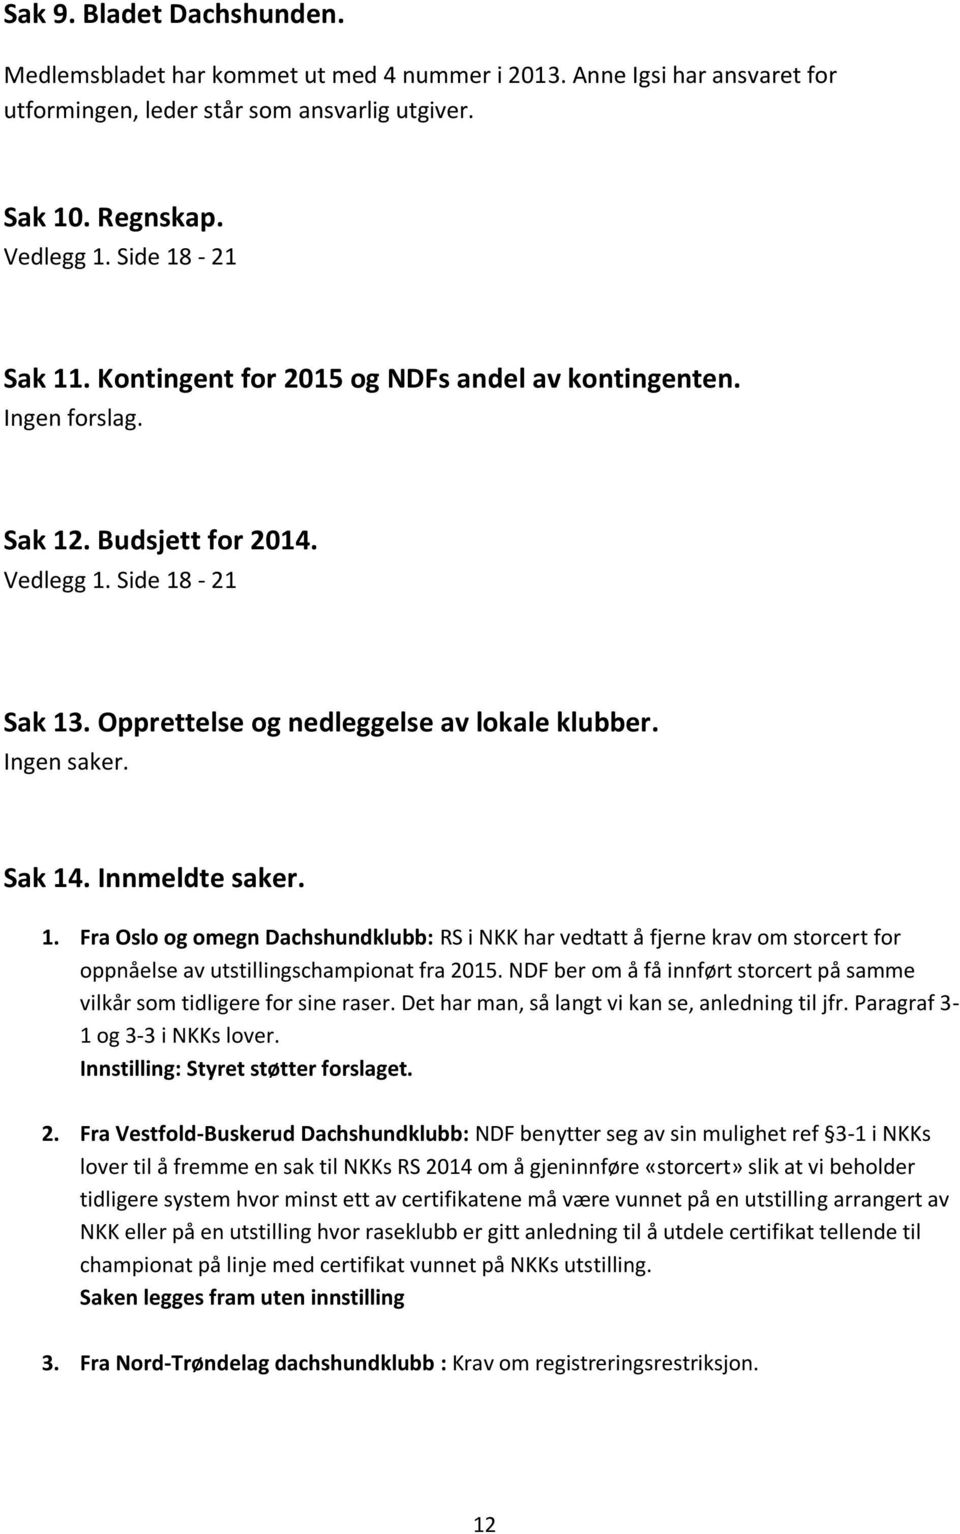 Innmeldte saker. 1. Fra Oslo og omegn Dachshundklubb: RS i NKK har vedtatt å fjerne krav om storcert for oppnåelse av utstillingschampionat fra 2015.